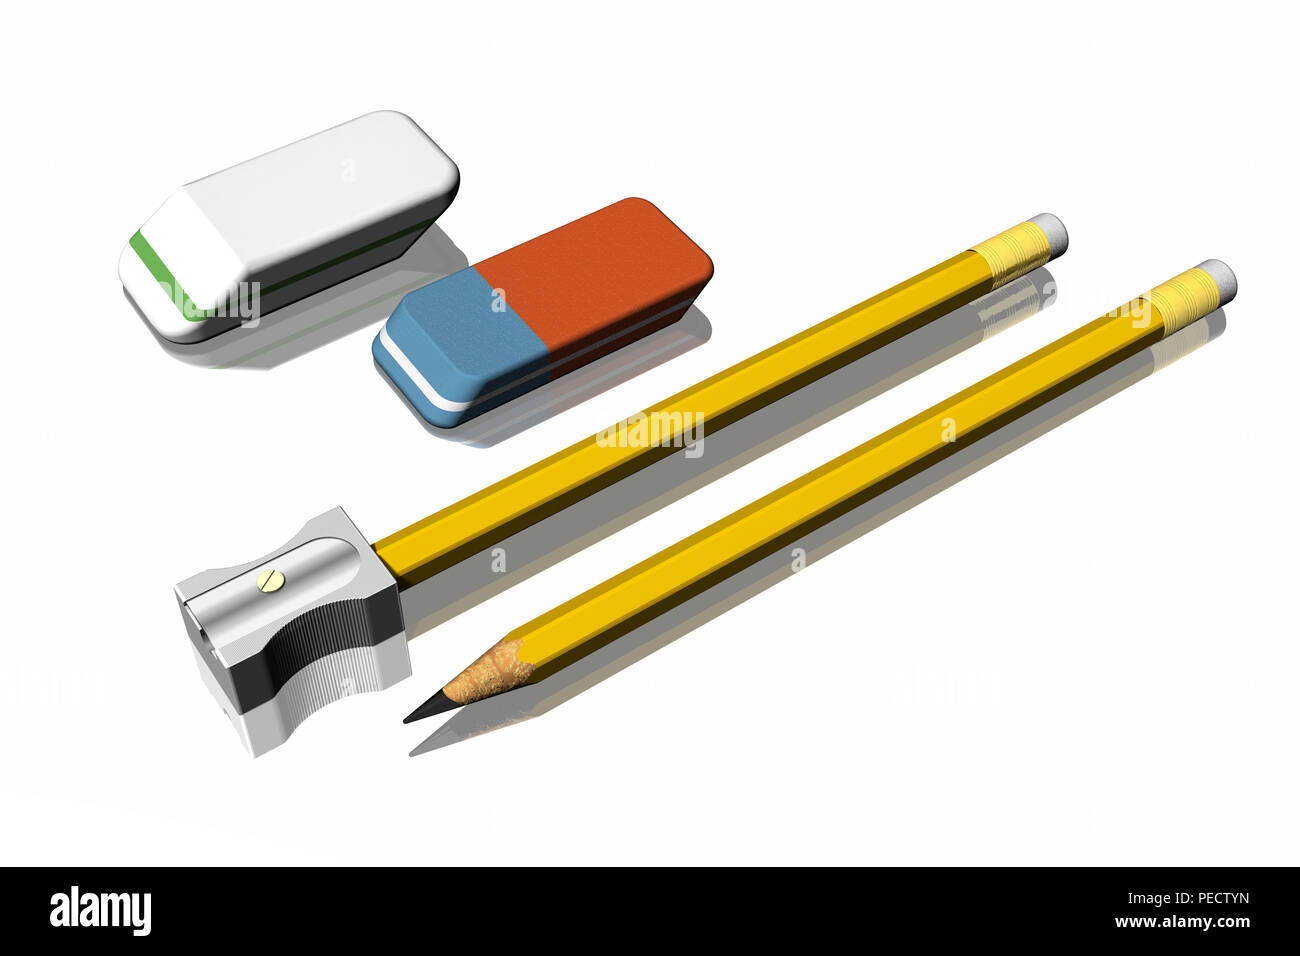 3D illustration. Fournitures de bureau : crayons, taille-crayon, gomme. Banque D'Images